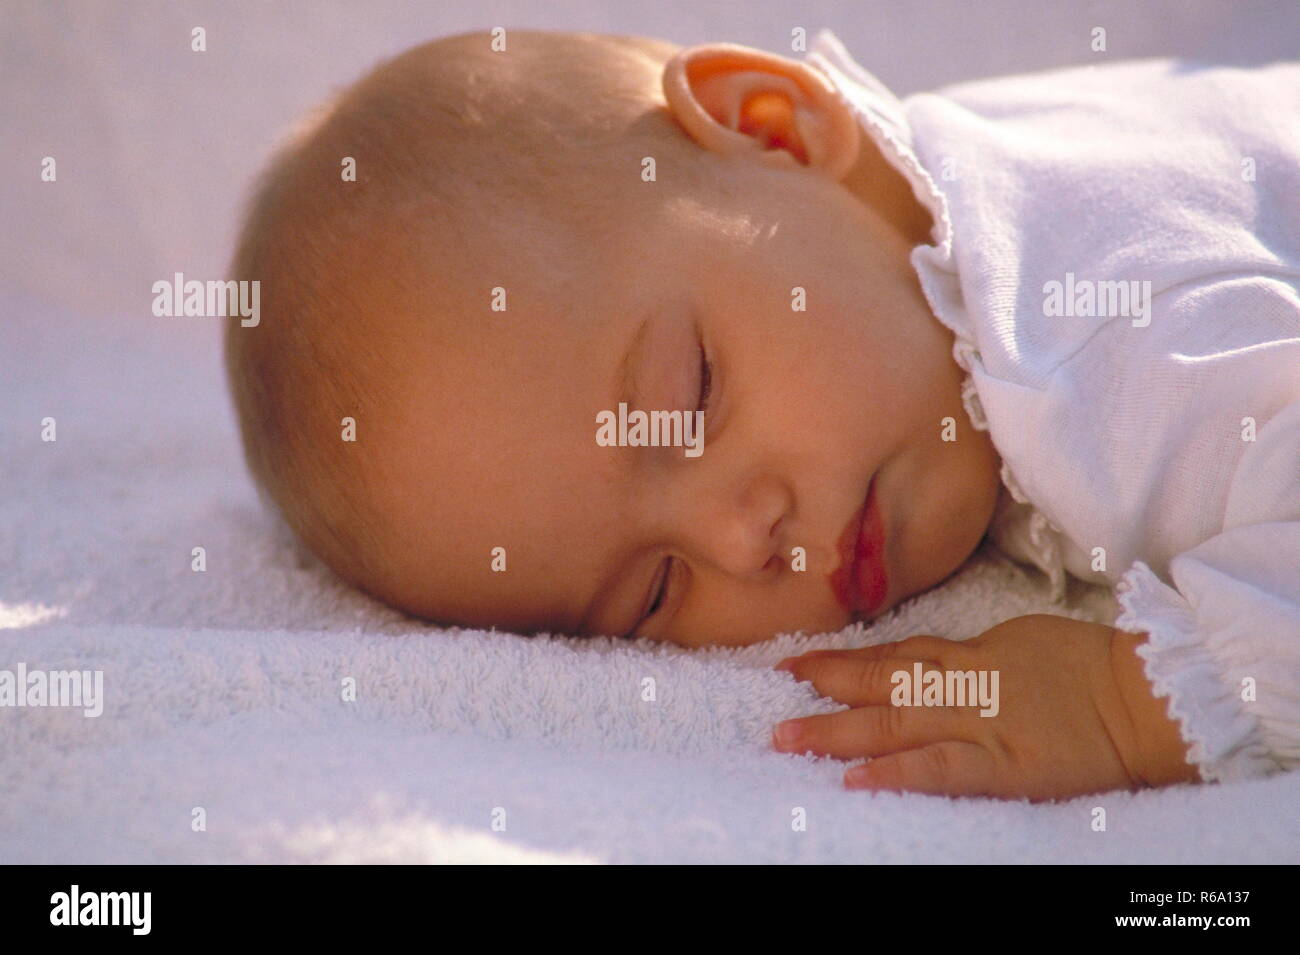 Ritratto, Baby, 4 Monate alt, schlaeft in Bauchlage auf einem weissen Frotteehandtuch Foto Stock